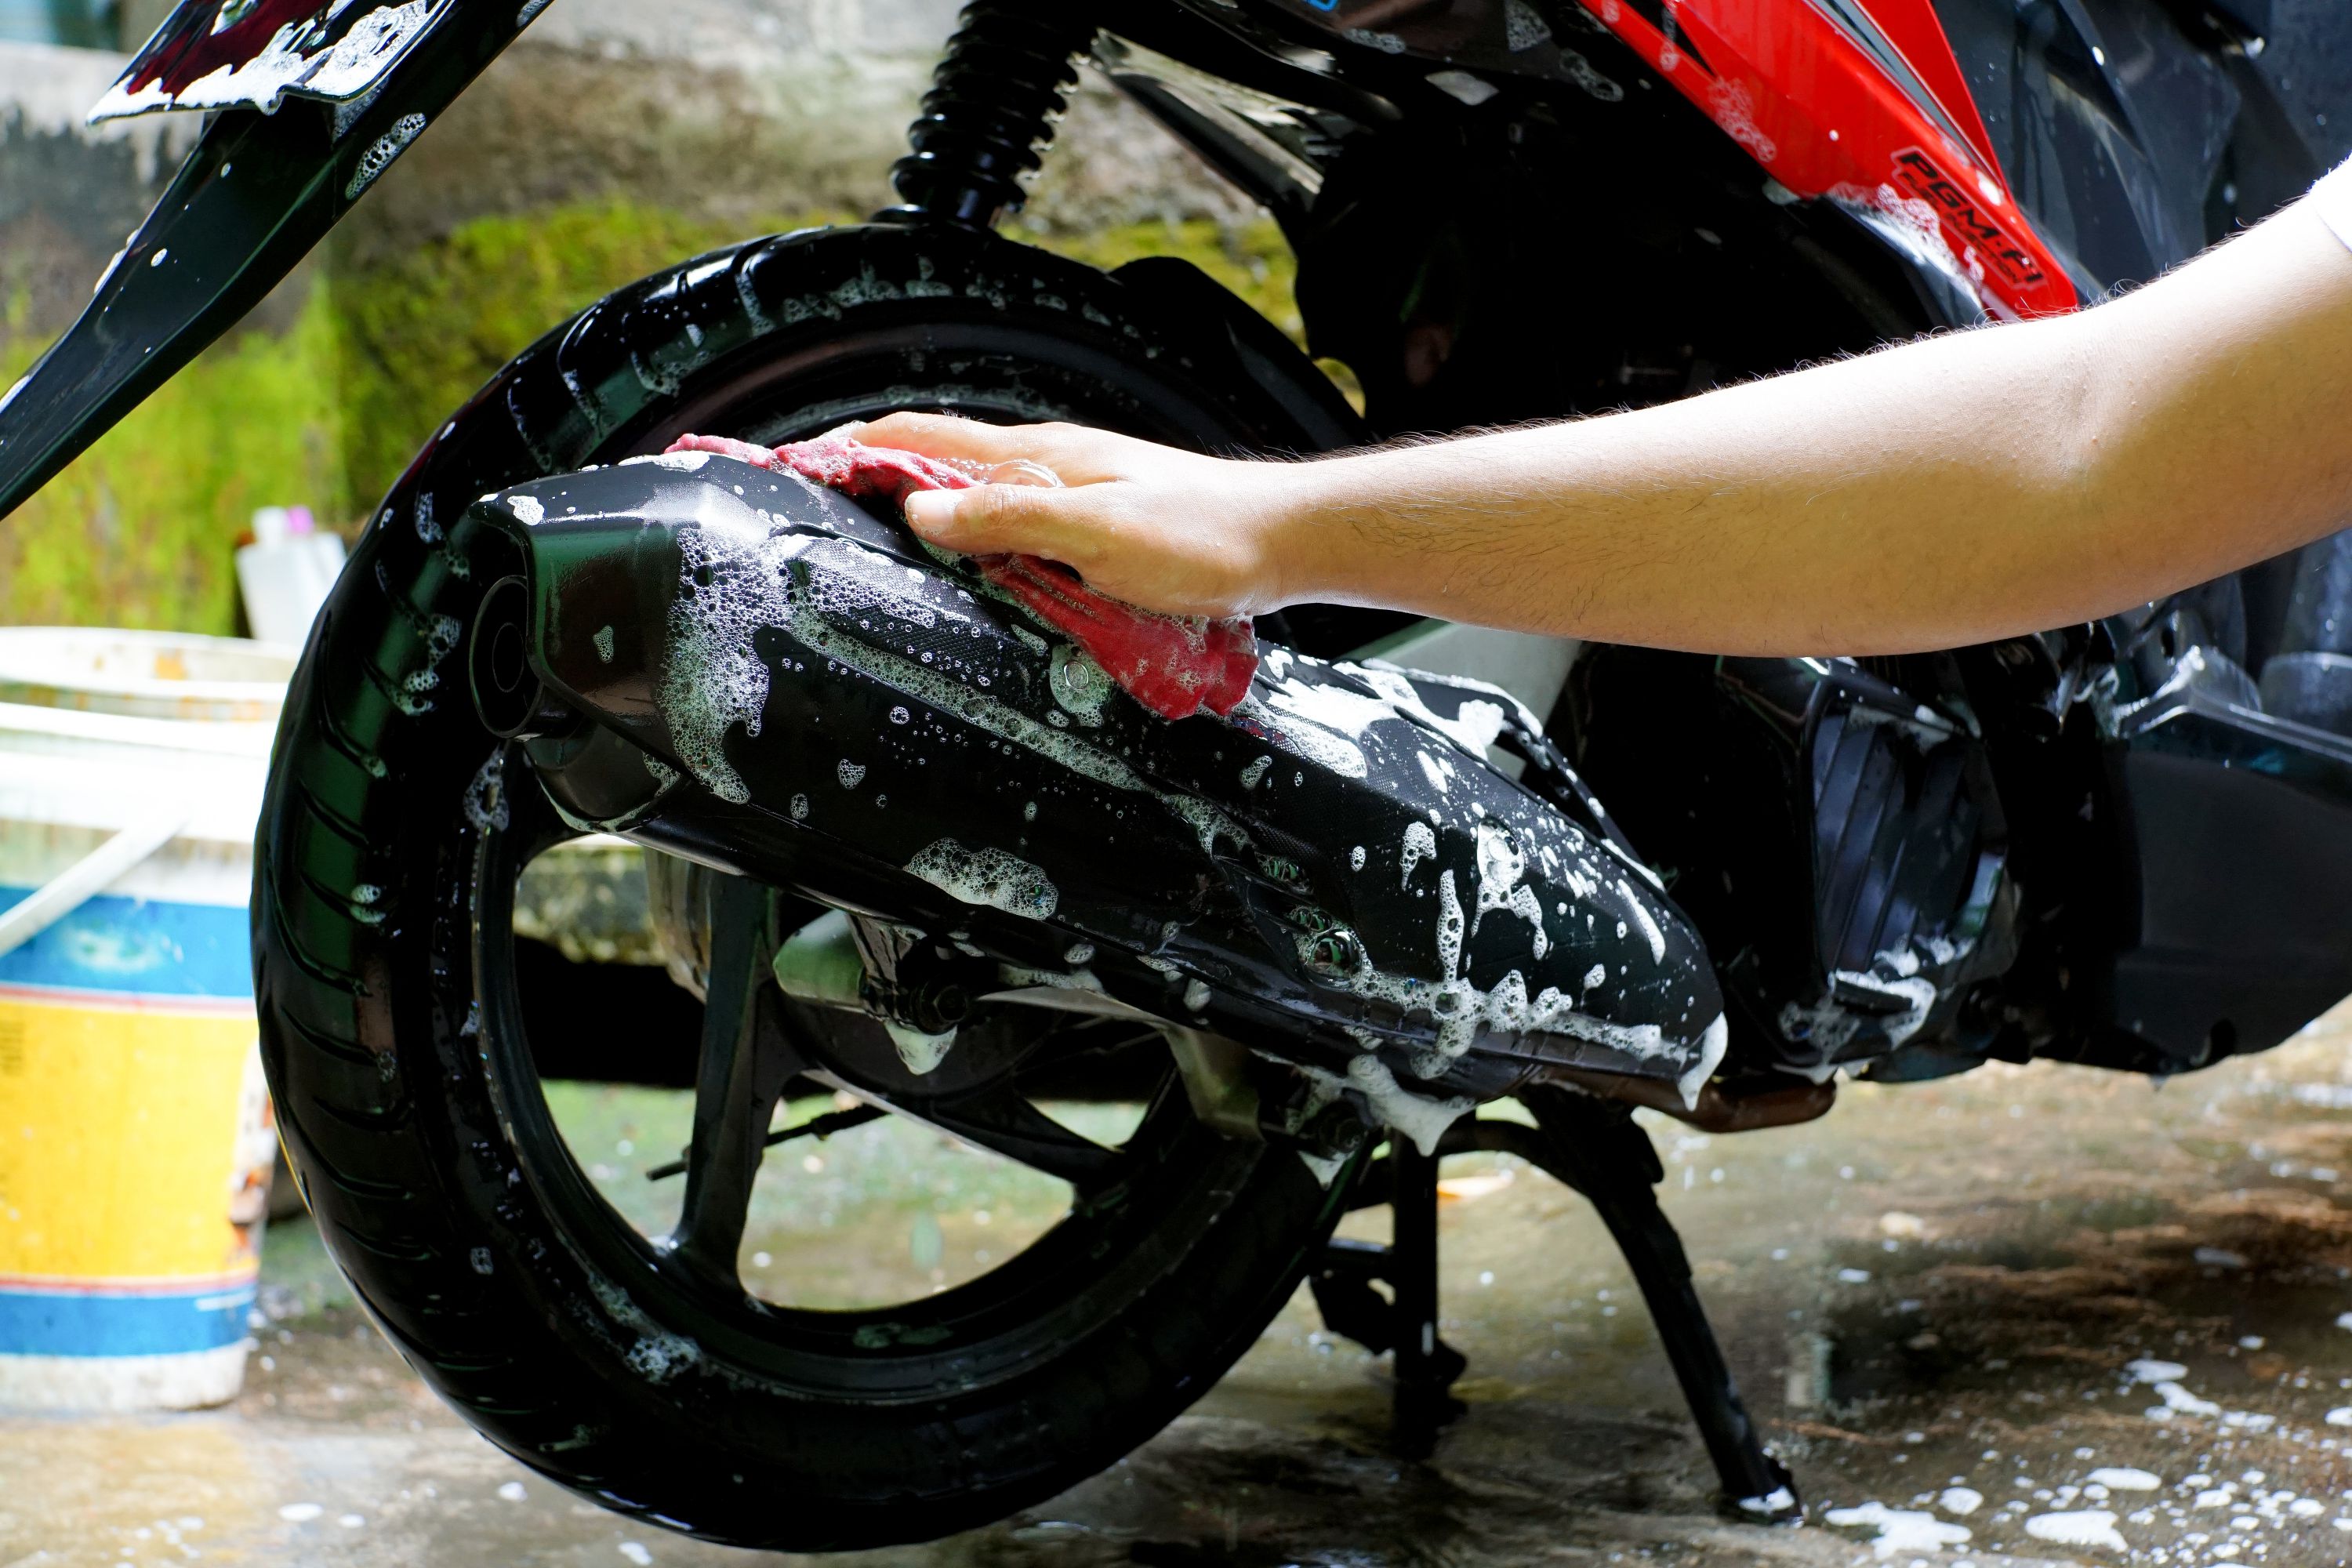 7 Langkah Mencuci Motor yang Benar, Bisa Dilakukan di Rumah